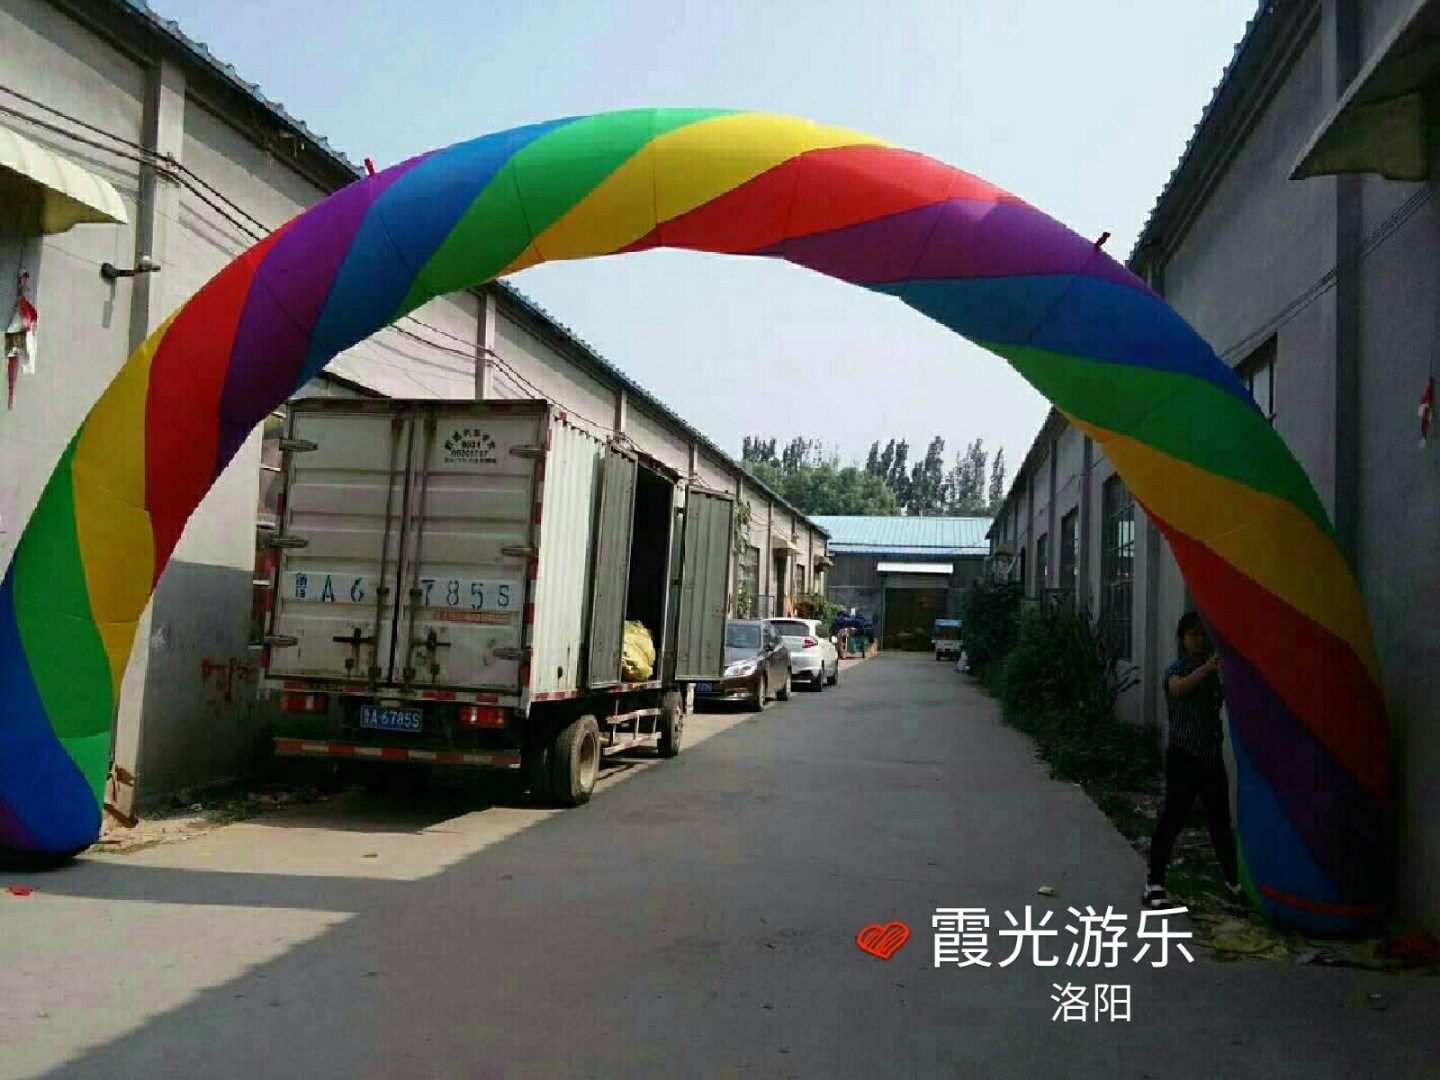 恩平彩虹拱门